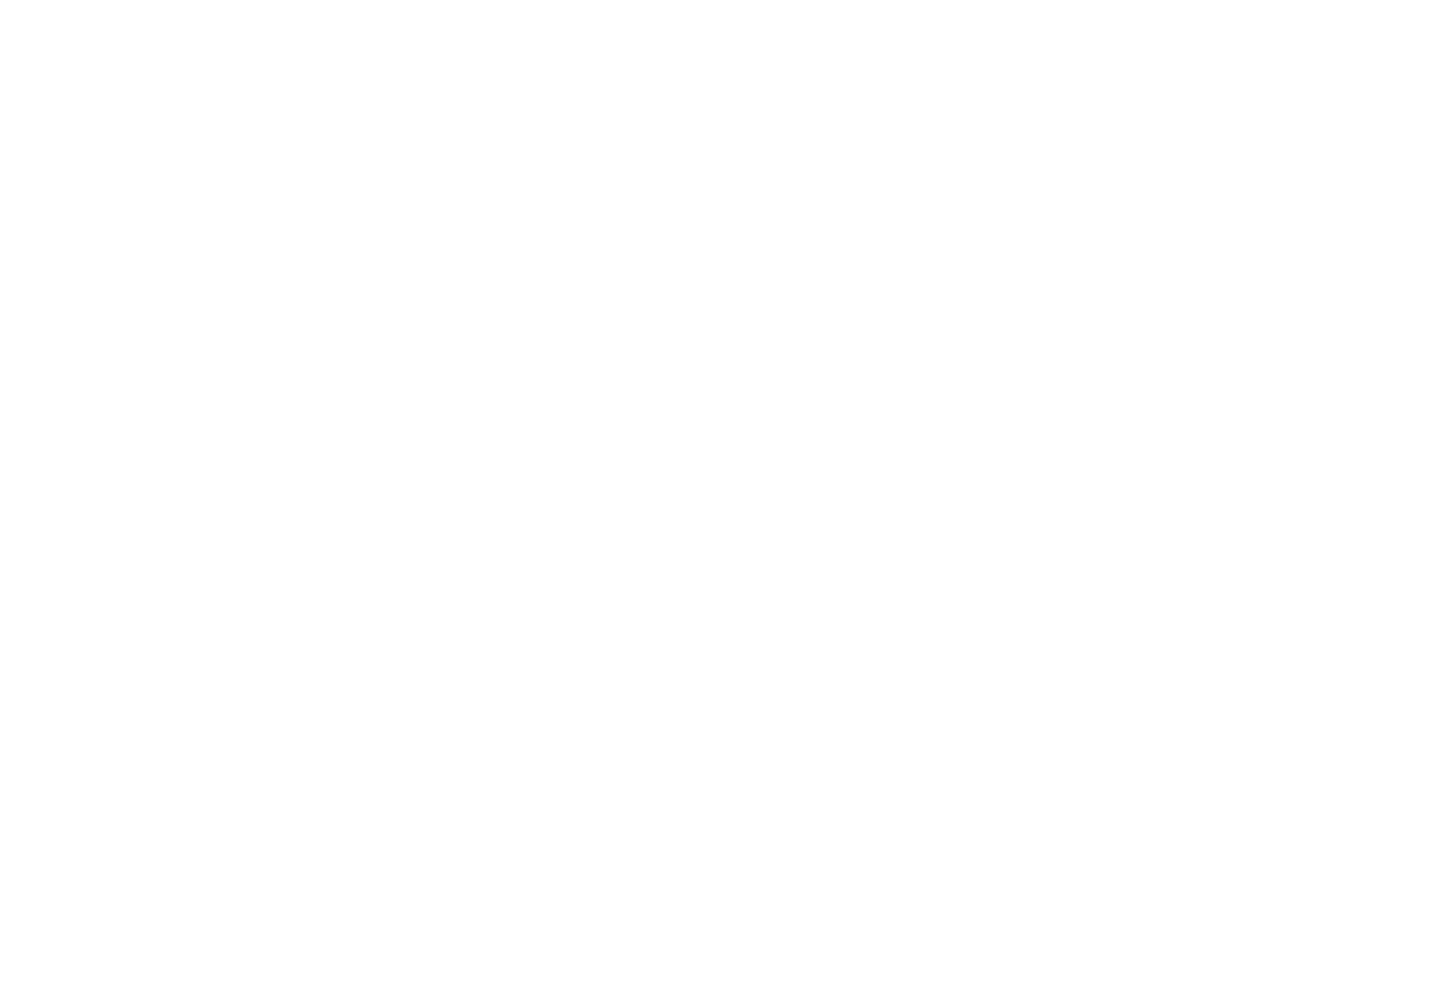 Official Selection West Texas Film Festival 2019 laurel